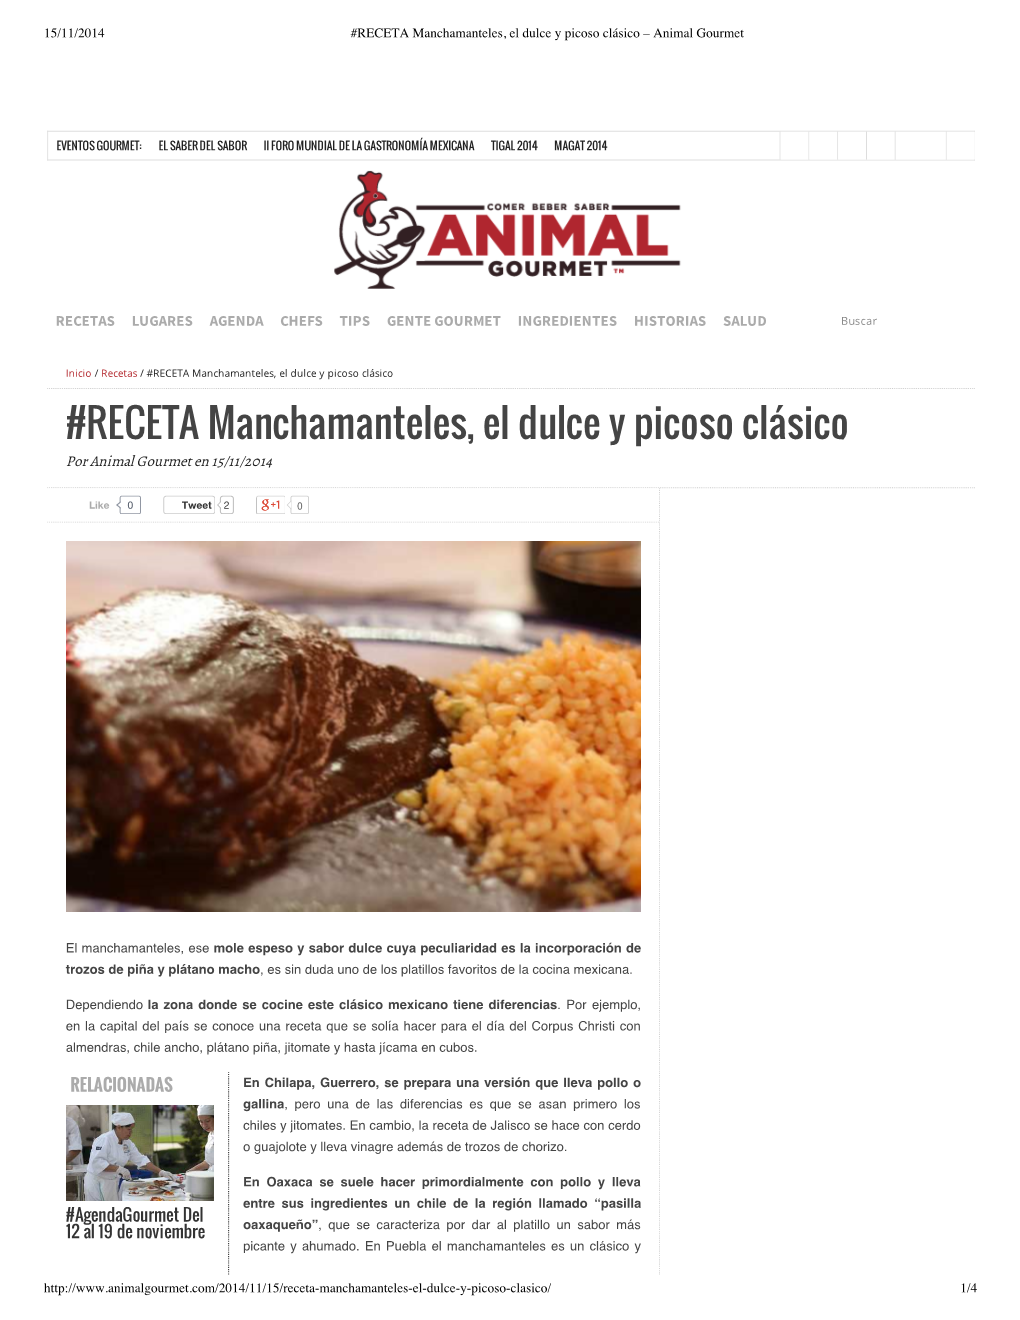 RECETA Manchamanteles, El Dulce Y Picoso Clásico – Animal Gourmet